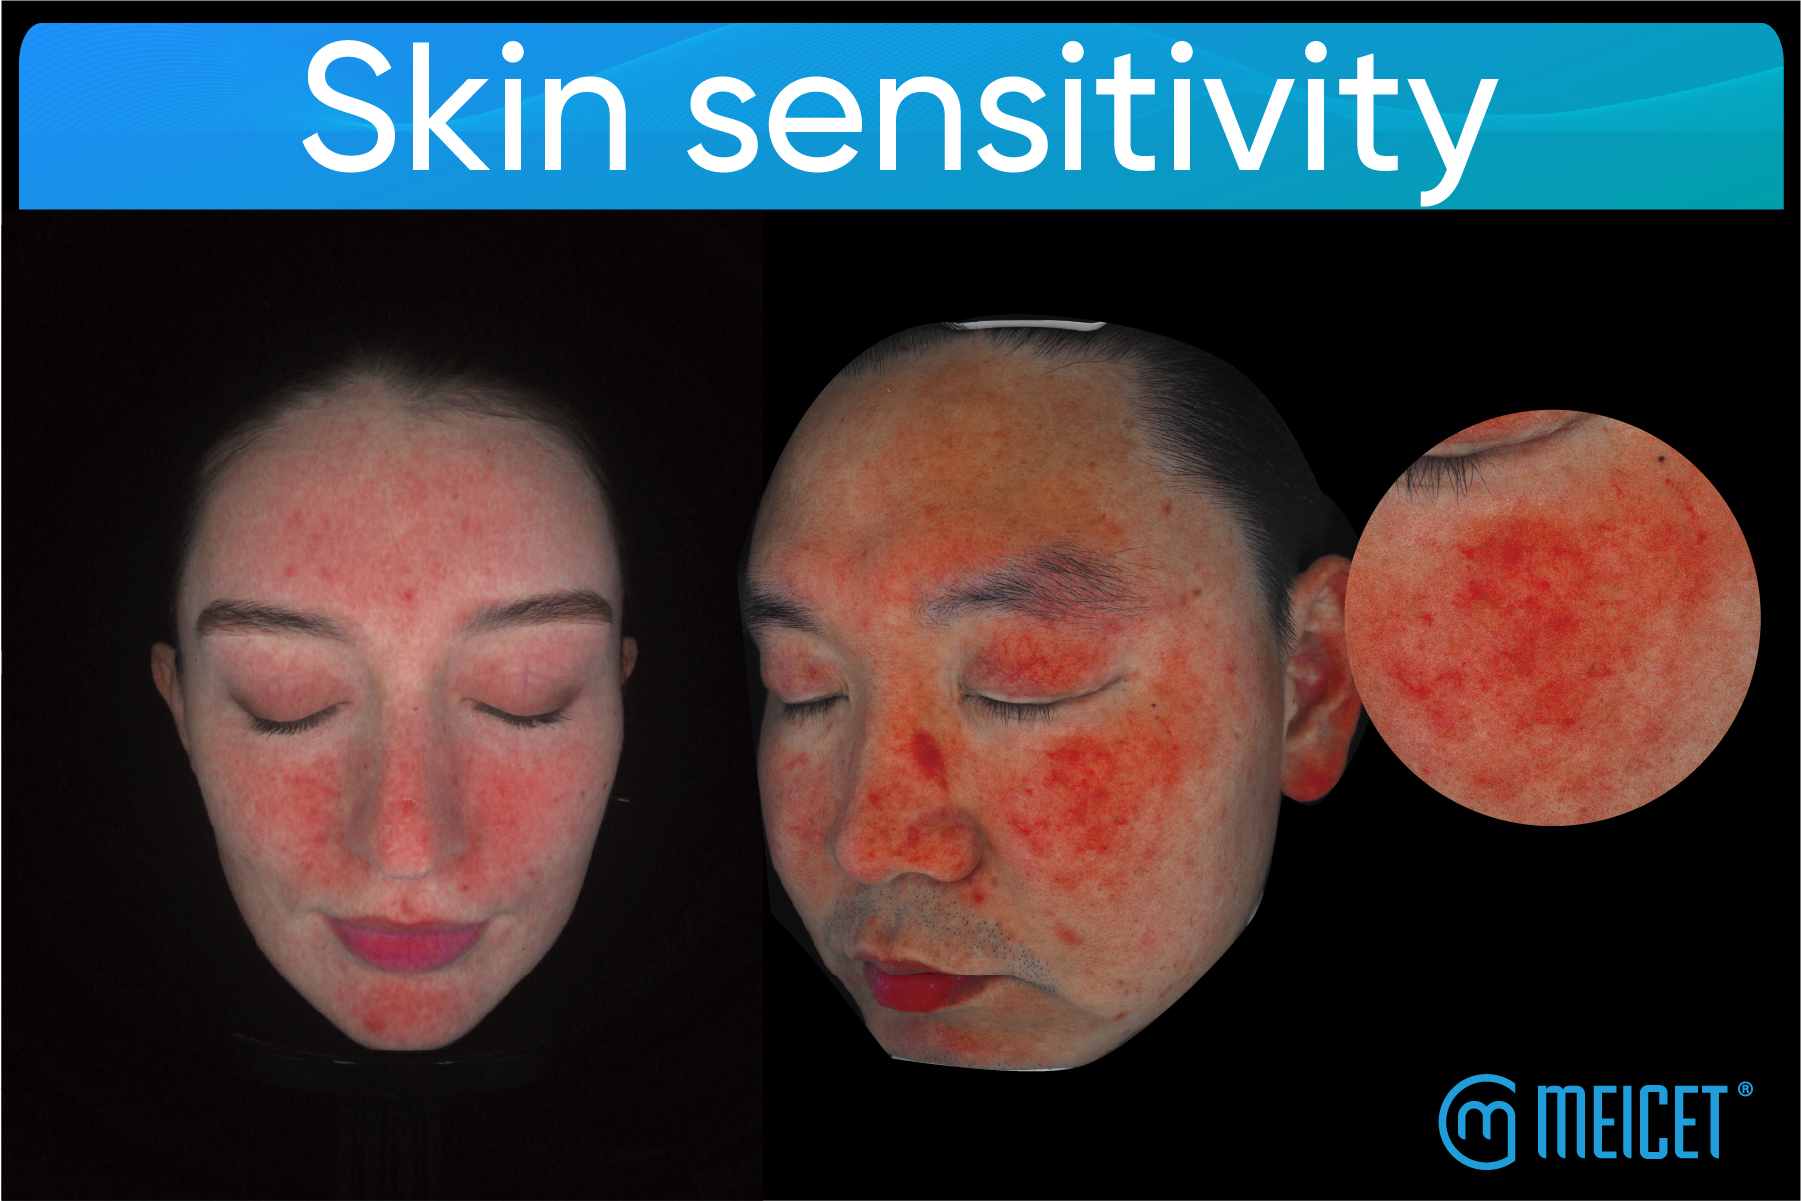 ત્વચાની સંવેદનશીલતાને સમજવી: કારણો, પ્રકારો, સારવારની વ્યૂહરચના અને ત્વચા વિશ્લેષણ ઉપકરણોની ભૂમિકા